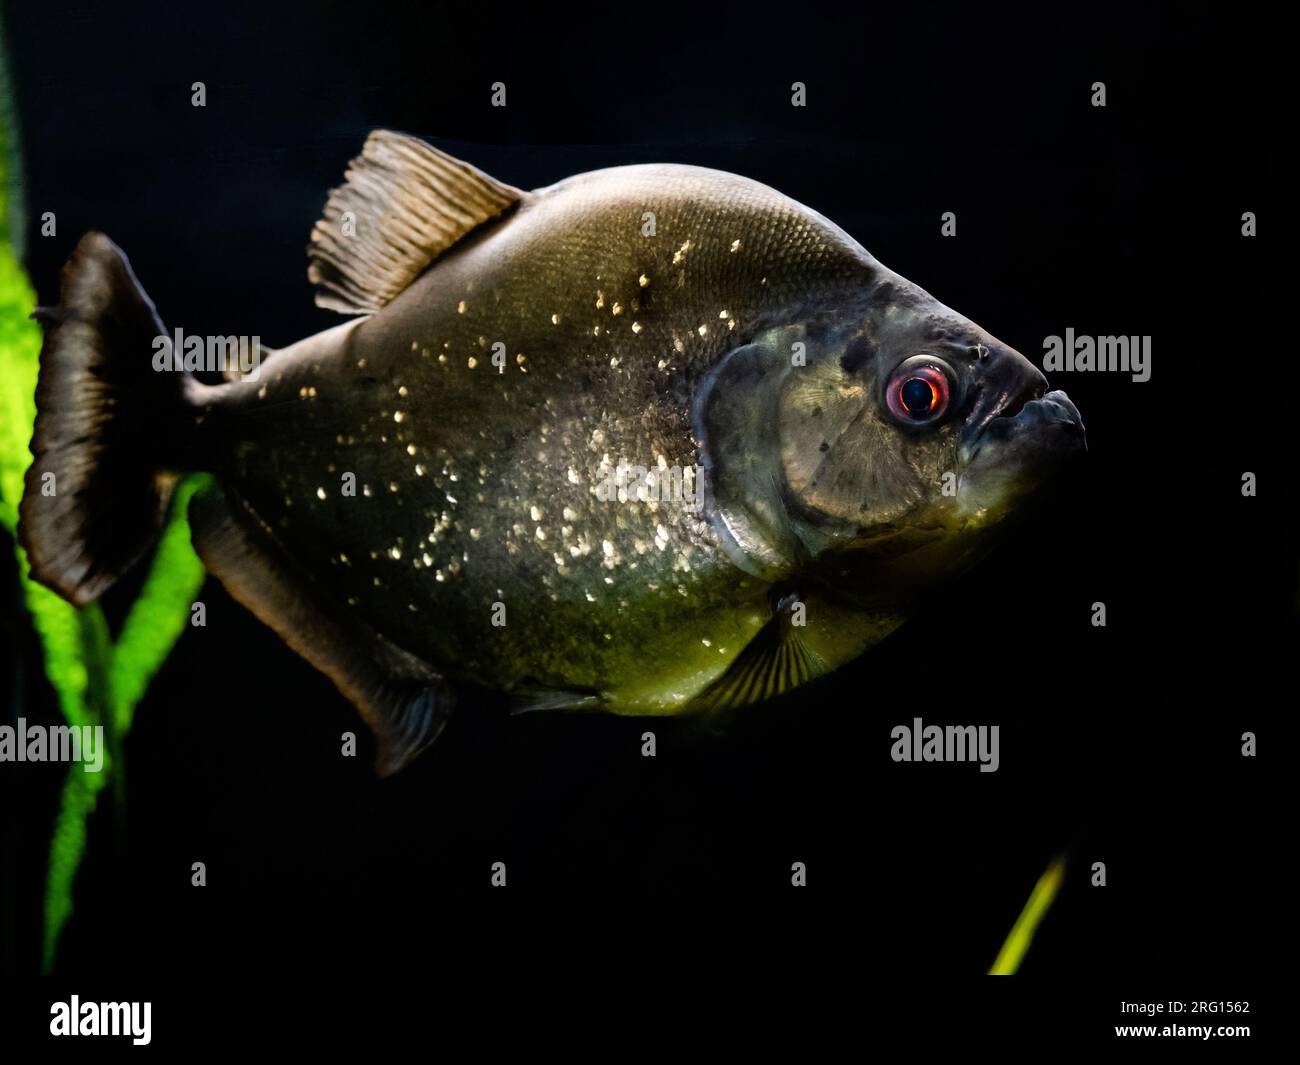 pesce piranha con pelle argentata e occhi rossi sott'acqua in acquario su sfondo nero Foto Stock